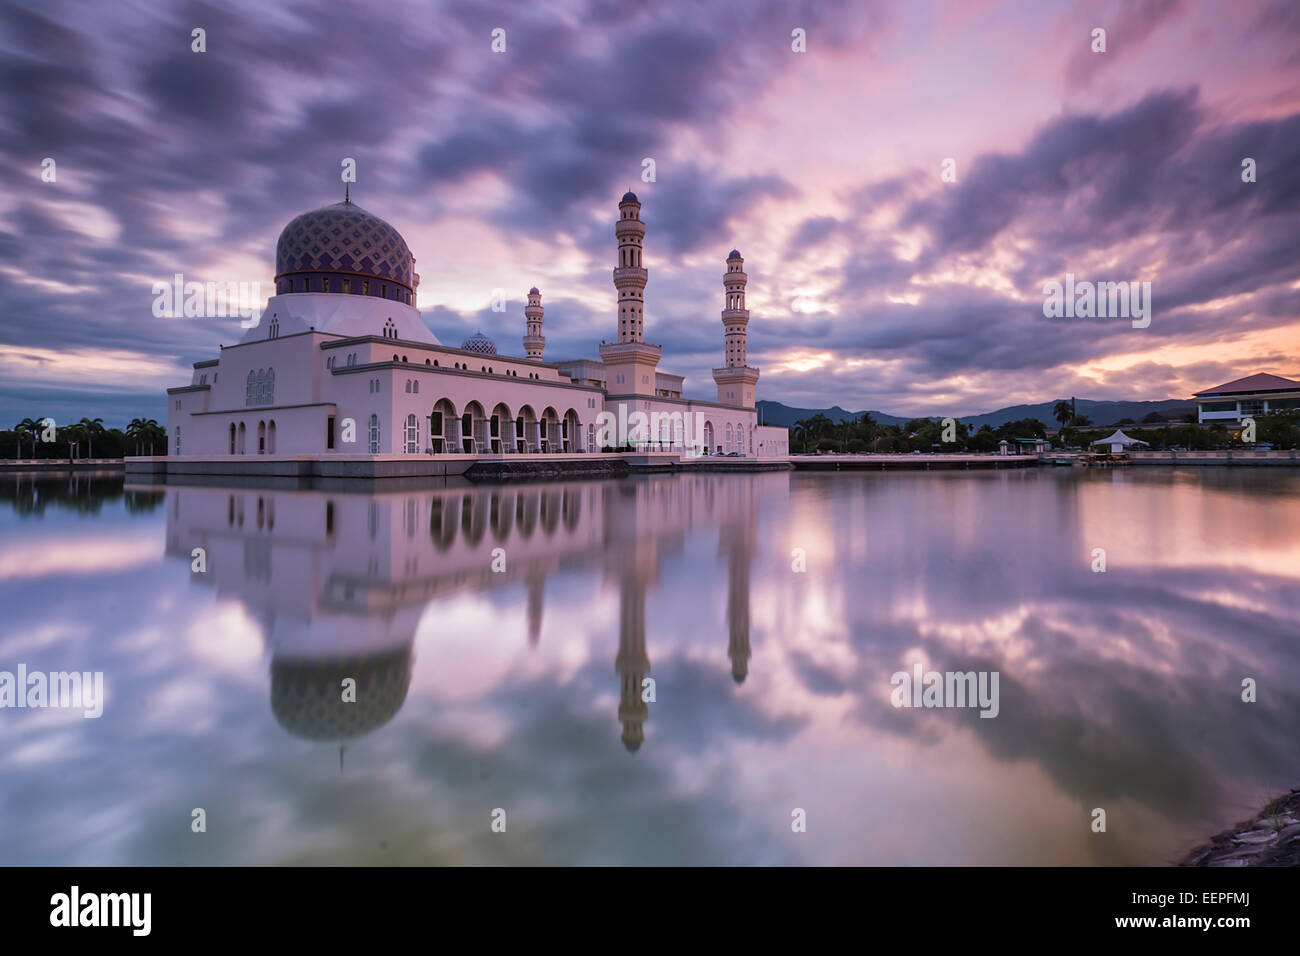 Mosque of City Likas Kota Kinabalu during Sunrise Stock Photo